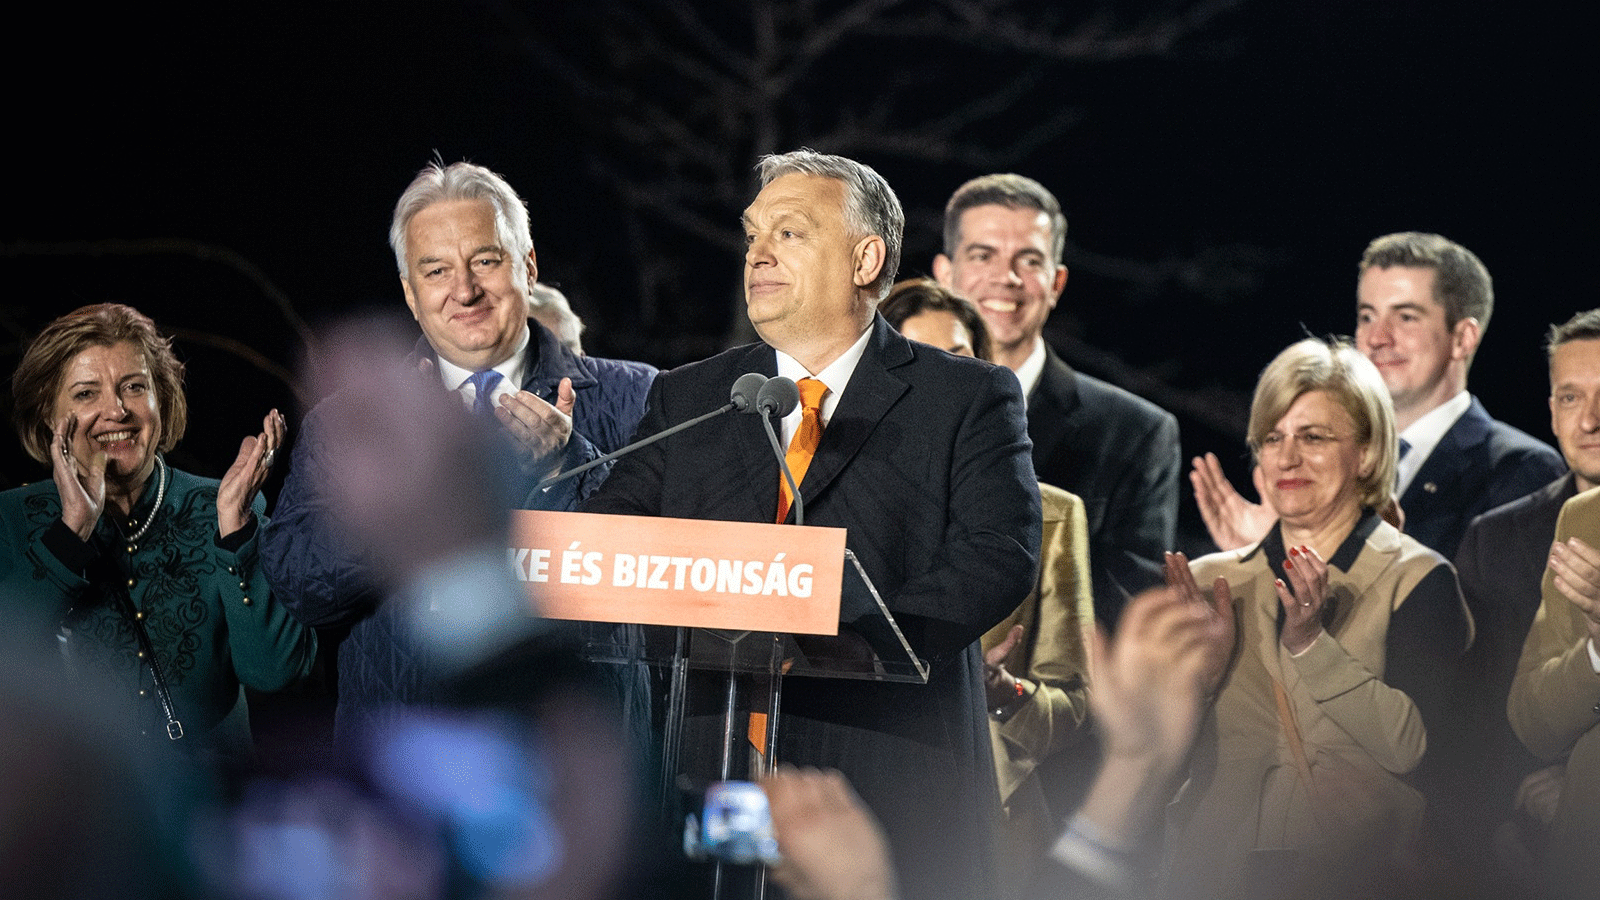 فكتور أوربان، الرئيس المجري الفائز بالانتخابات محتفلاً مع أنصاره